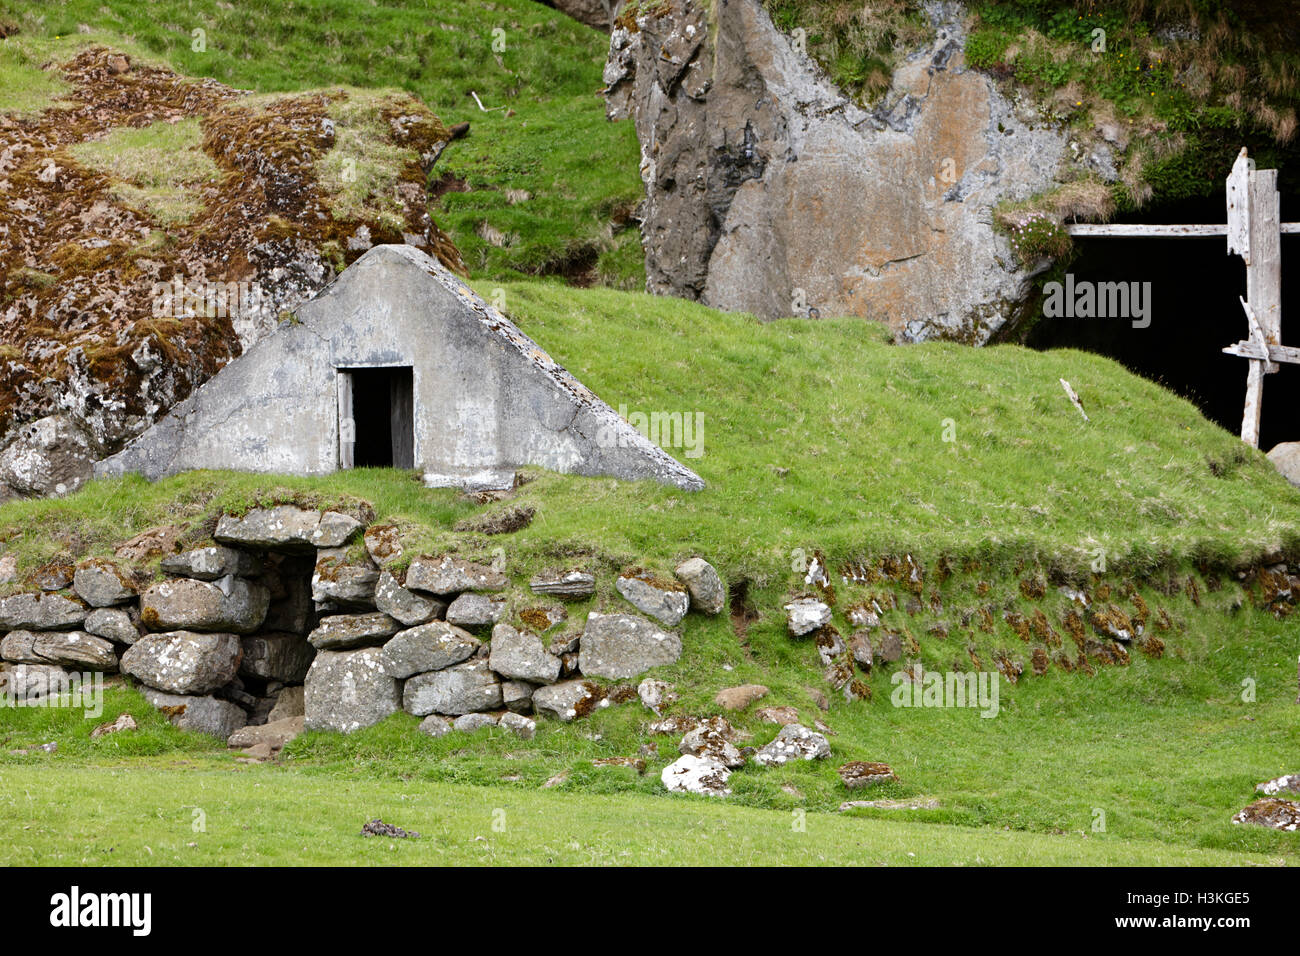 verlassene überdachte isländischen Rasen Haus jetzt verwendet, da ein Feld speichern Island Stockfoto